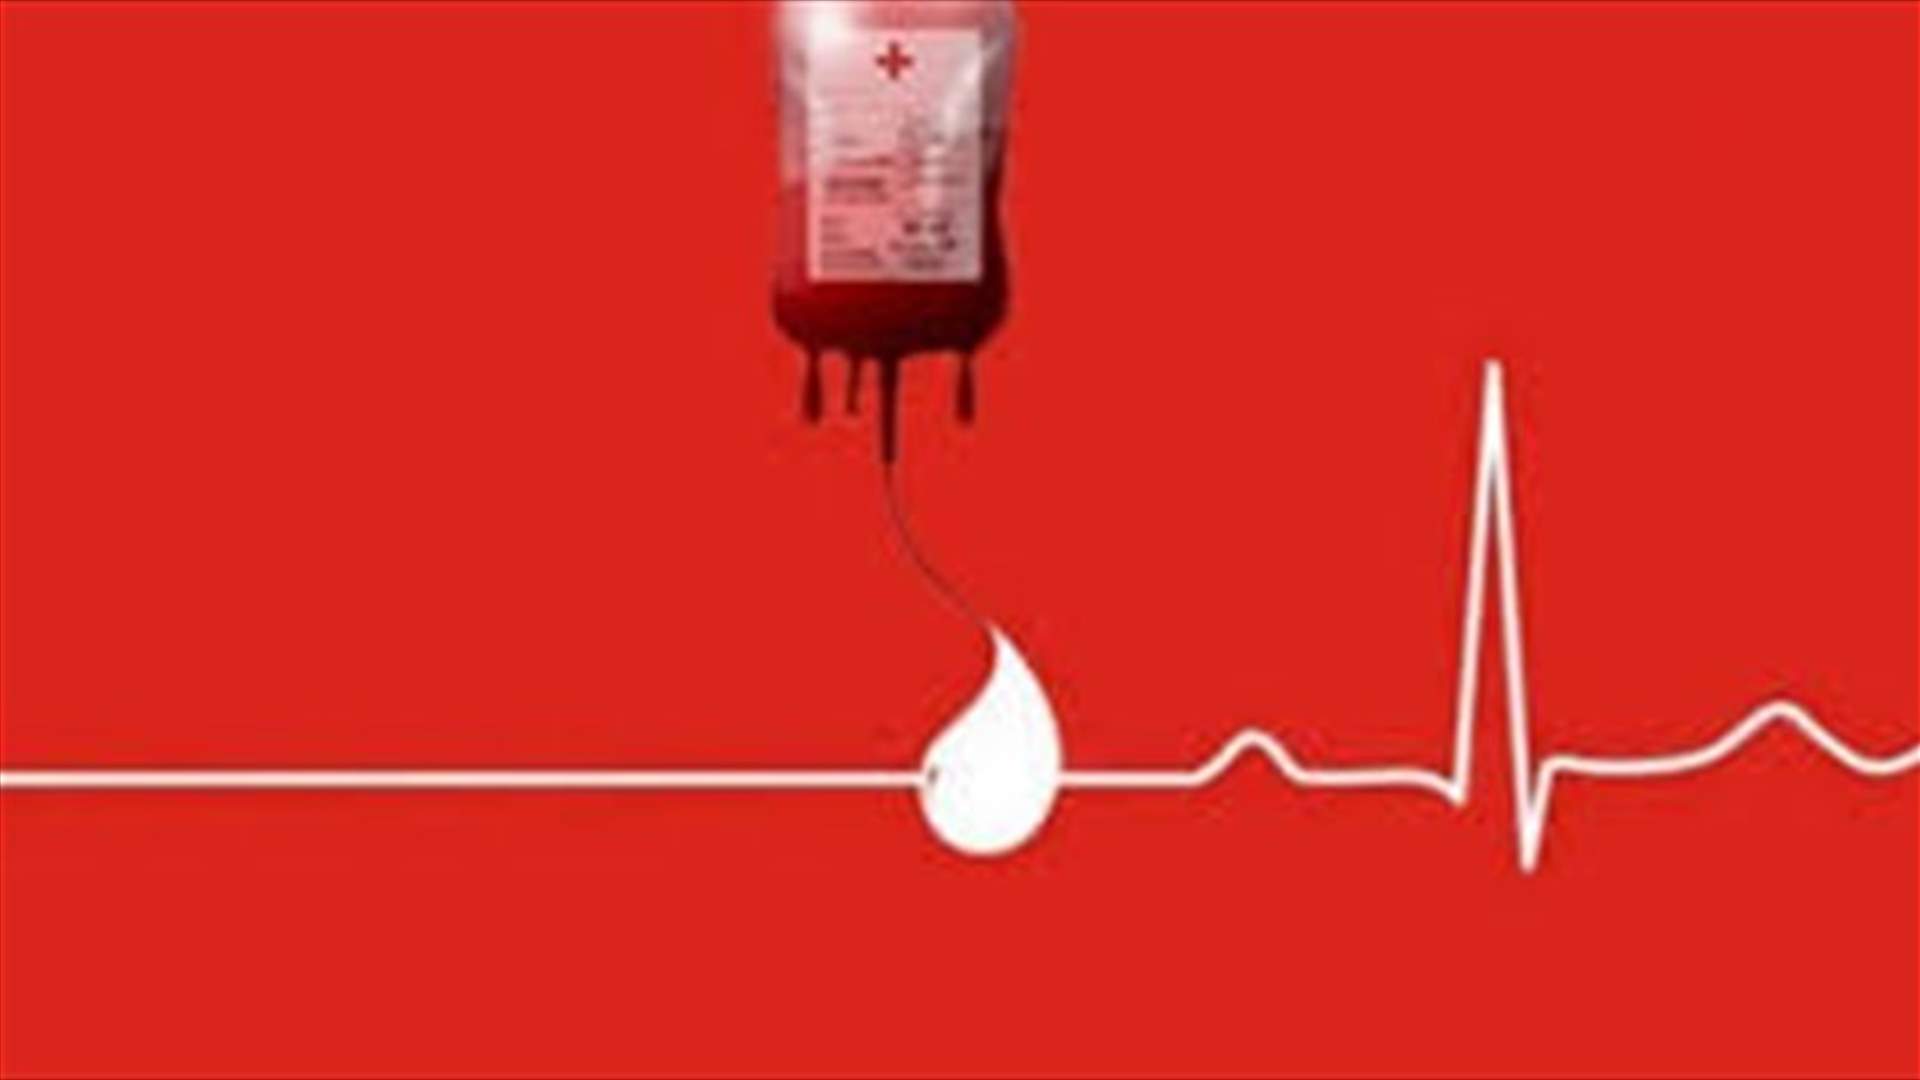 مريضة بحاجة ماسة لـ6 وحدات دم من فئة O+ ولـ 13 وحدة بلاكيت في مستشفى أوتيل ديو للتبرع الرجاء الاتصال على الرقم 76061144